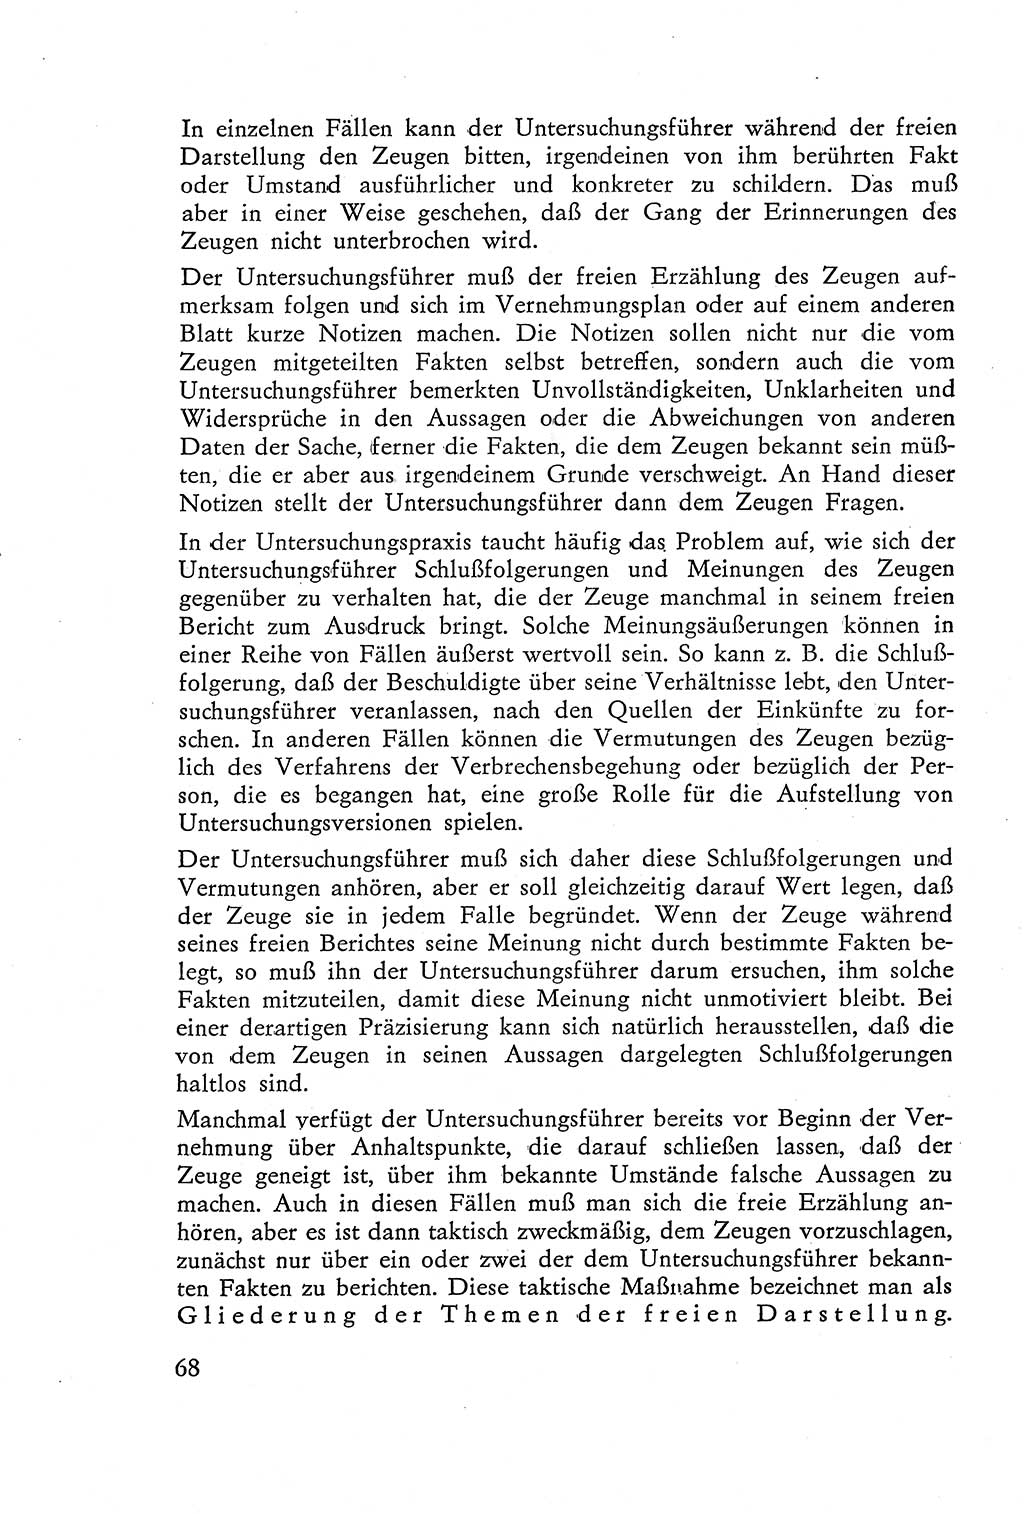 Die Vernehmung [Deutsche Demokratische Republik (DDR)] 1960, Seite 68 (Vern. DDR 1960, S. 68)